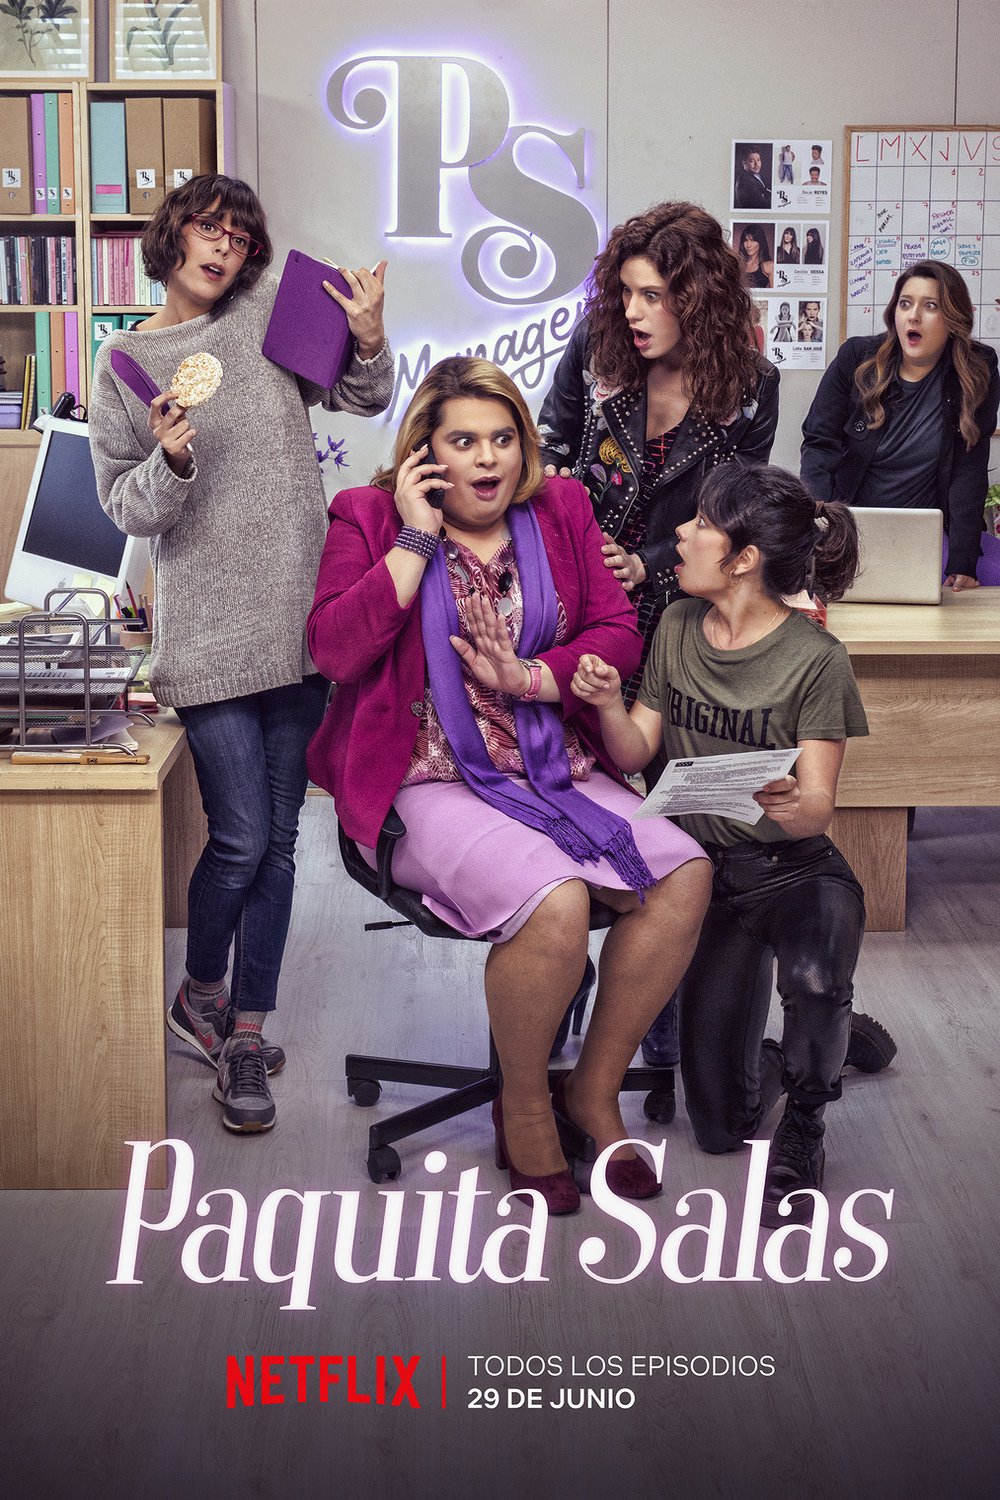 Spanish poster of the movie Paquita Salas